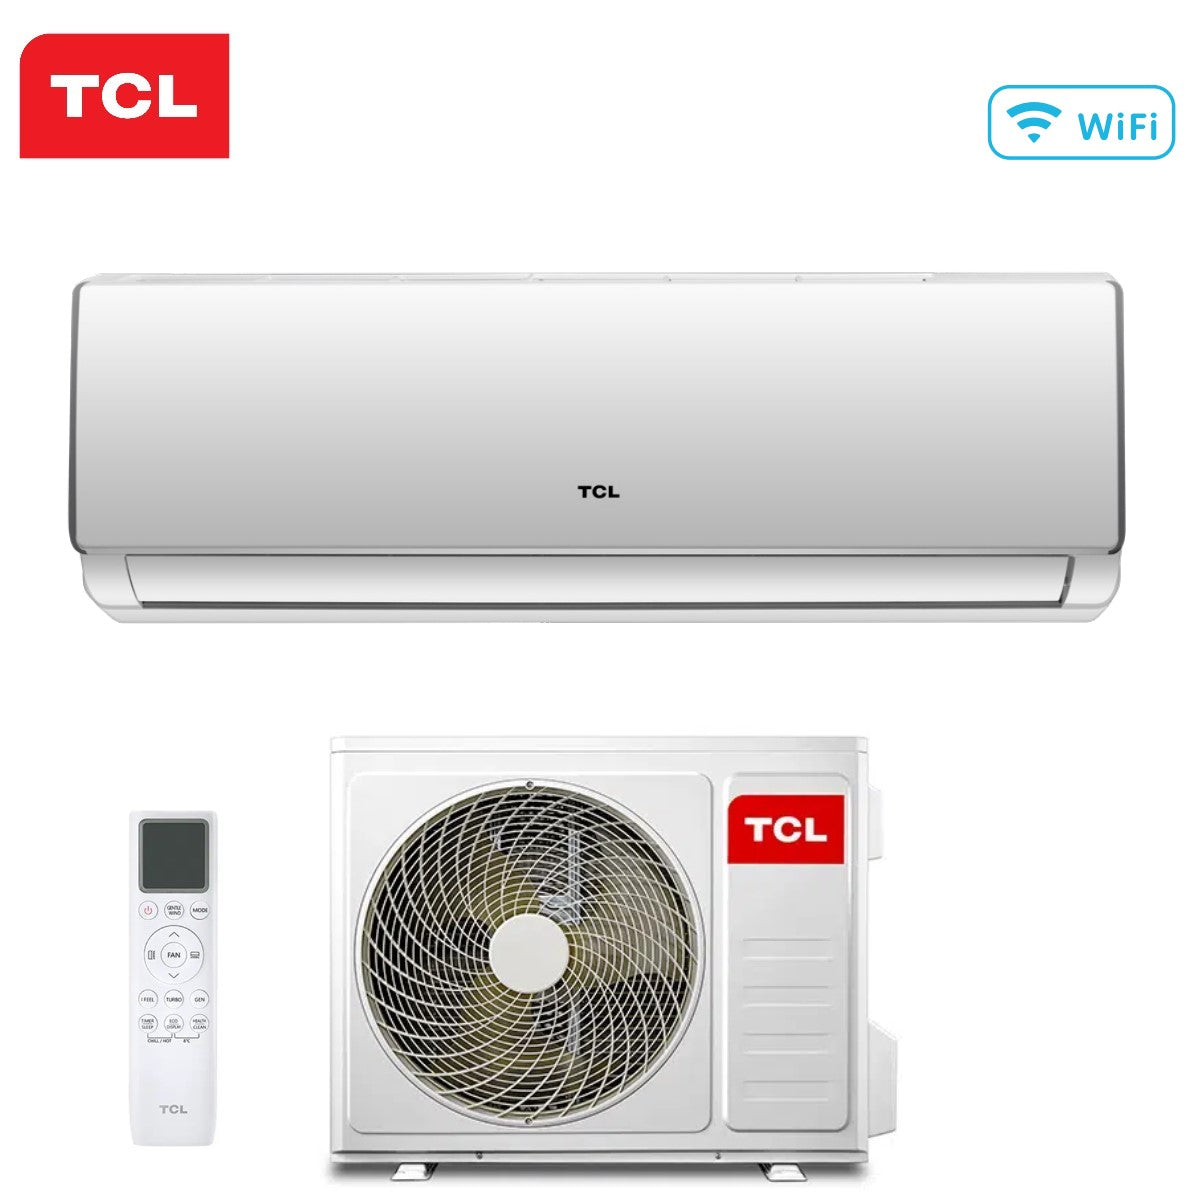 immagine-1-tcl-climatizzatore-condizionatore-tcl-inverter-serie-elite-f2-18000-btu-sn18f2s0-r-32-wi-fi-integrato-classe-aa